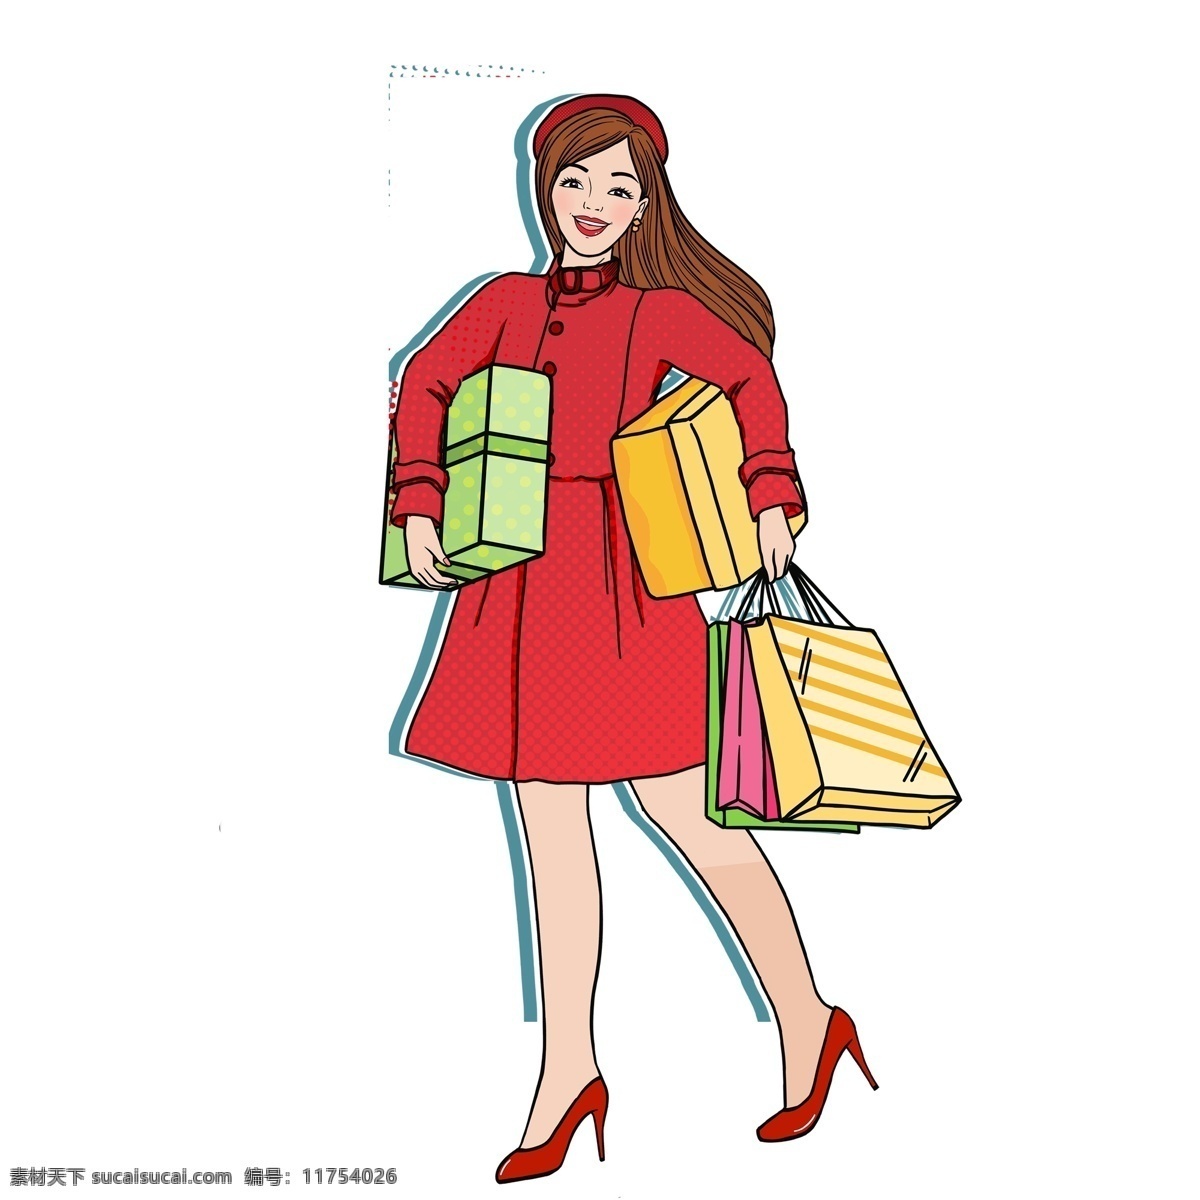 卡通 年货 女孩 贴纸 人物 插画 礼物 礼品 购物 女人 年货节 购物袋 女性 办年货